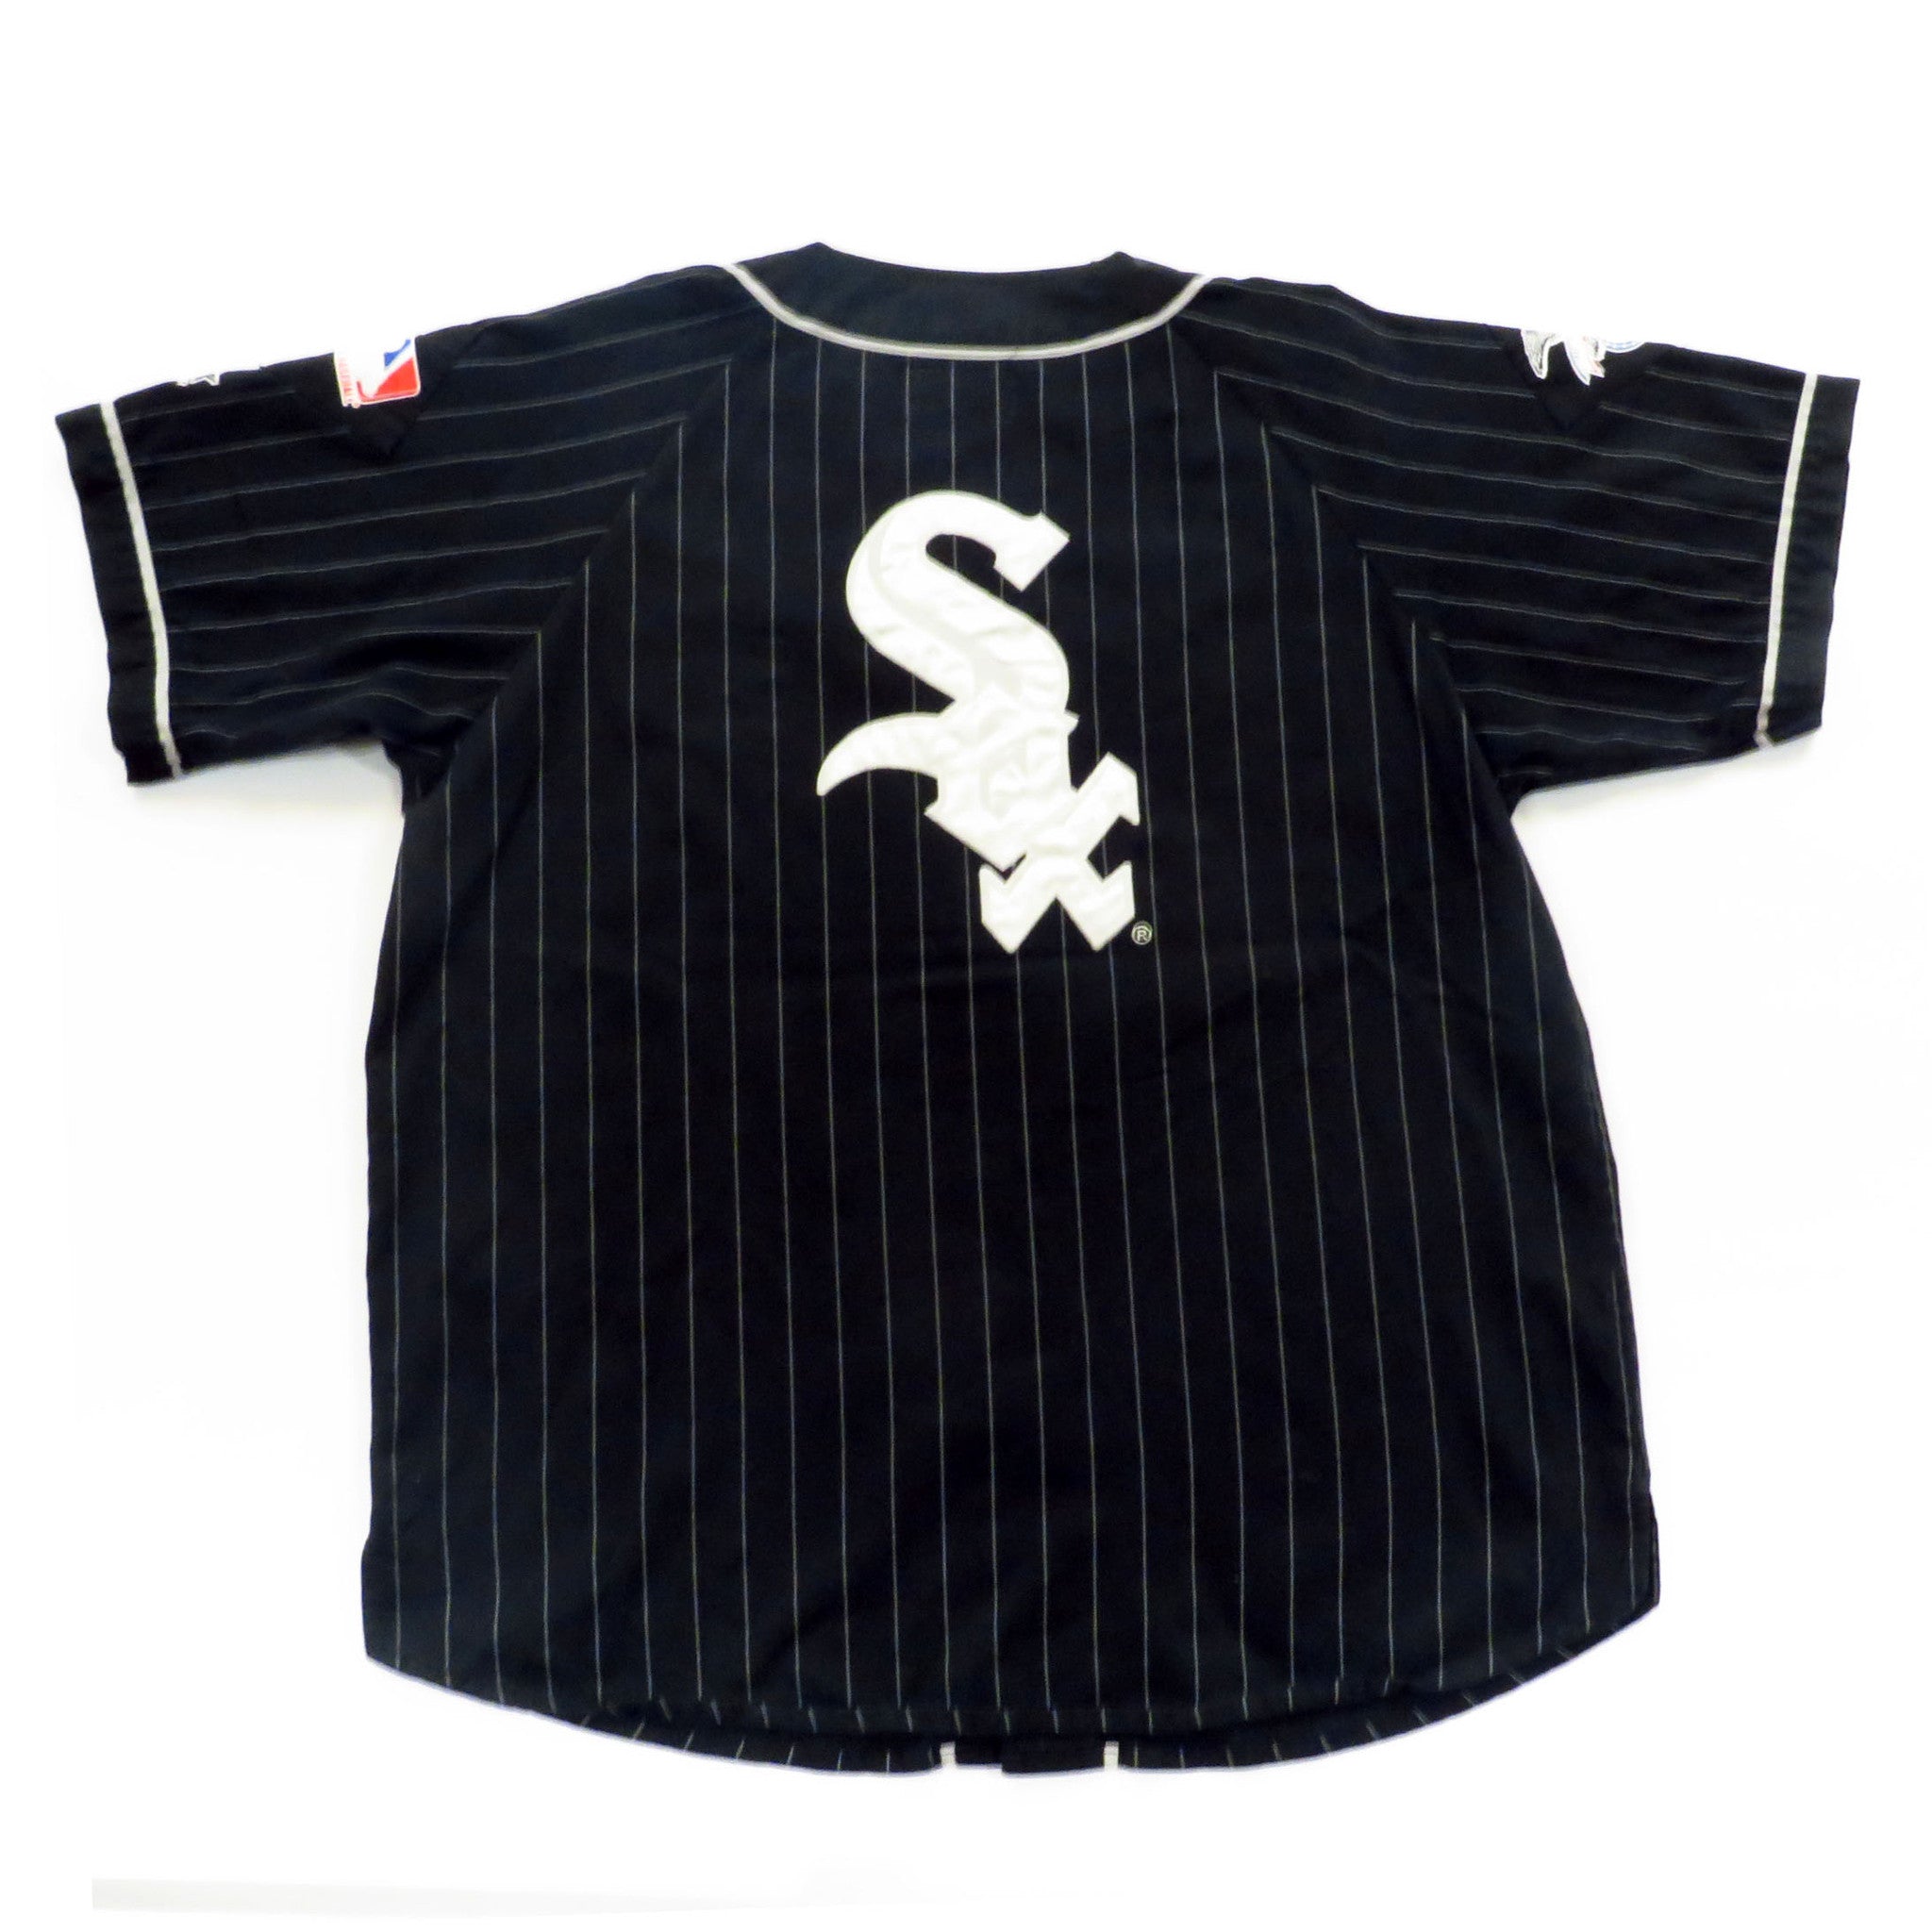 Starter Chicago White Sox MLB Jerseys for sale